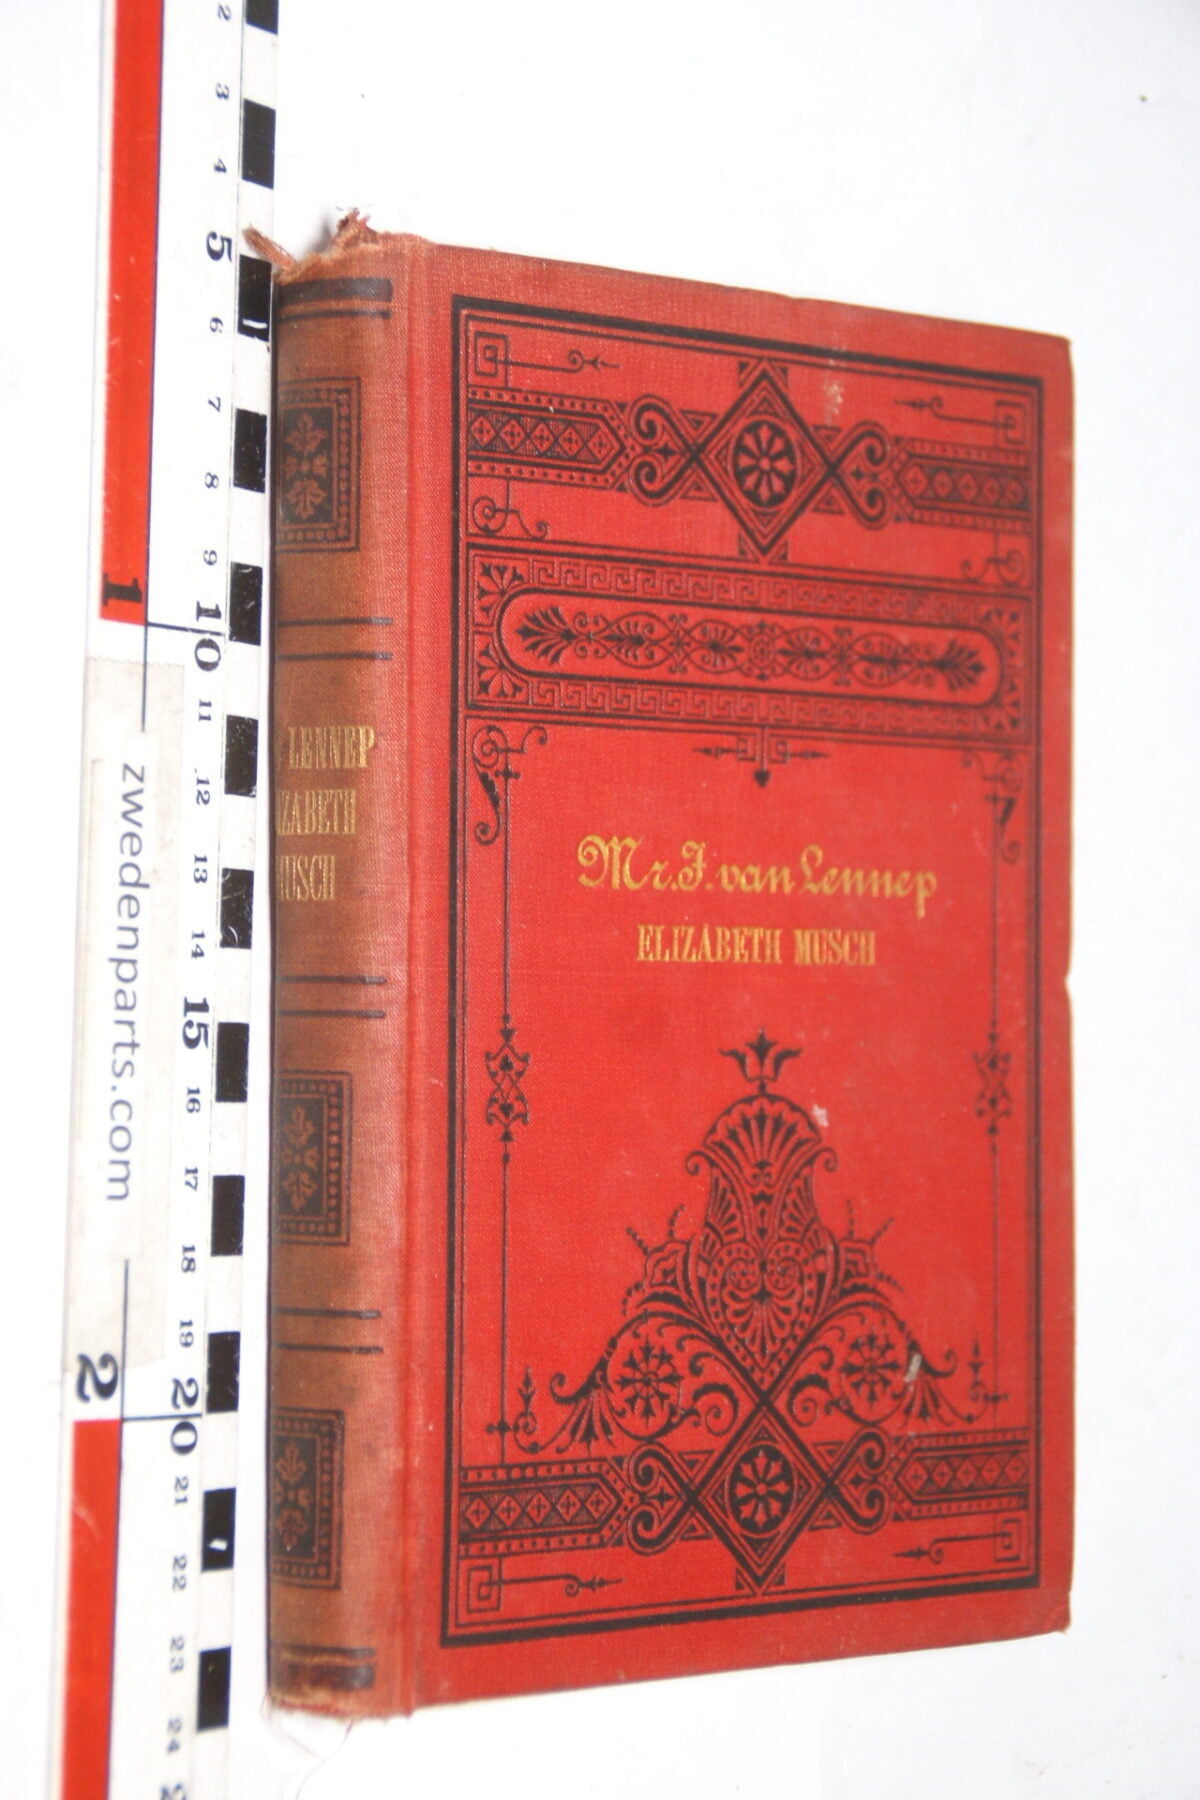 DSC02595 ca. 1889 boek Elazabeth Musch van J. van Lennep-f1af0d6c